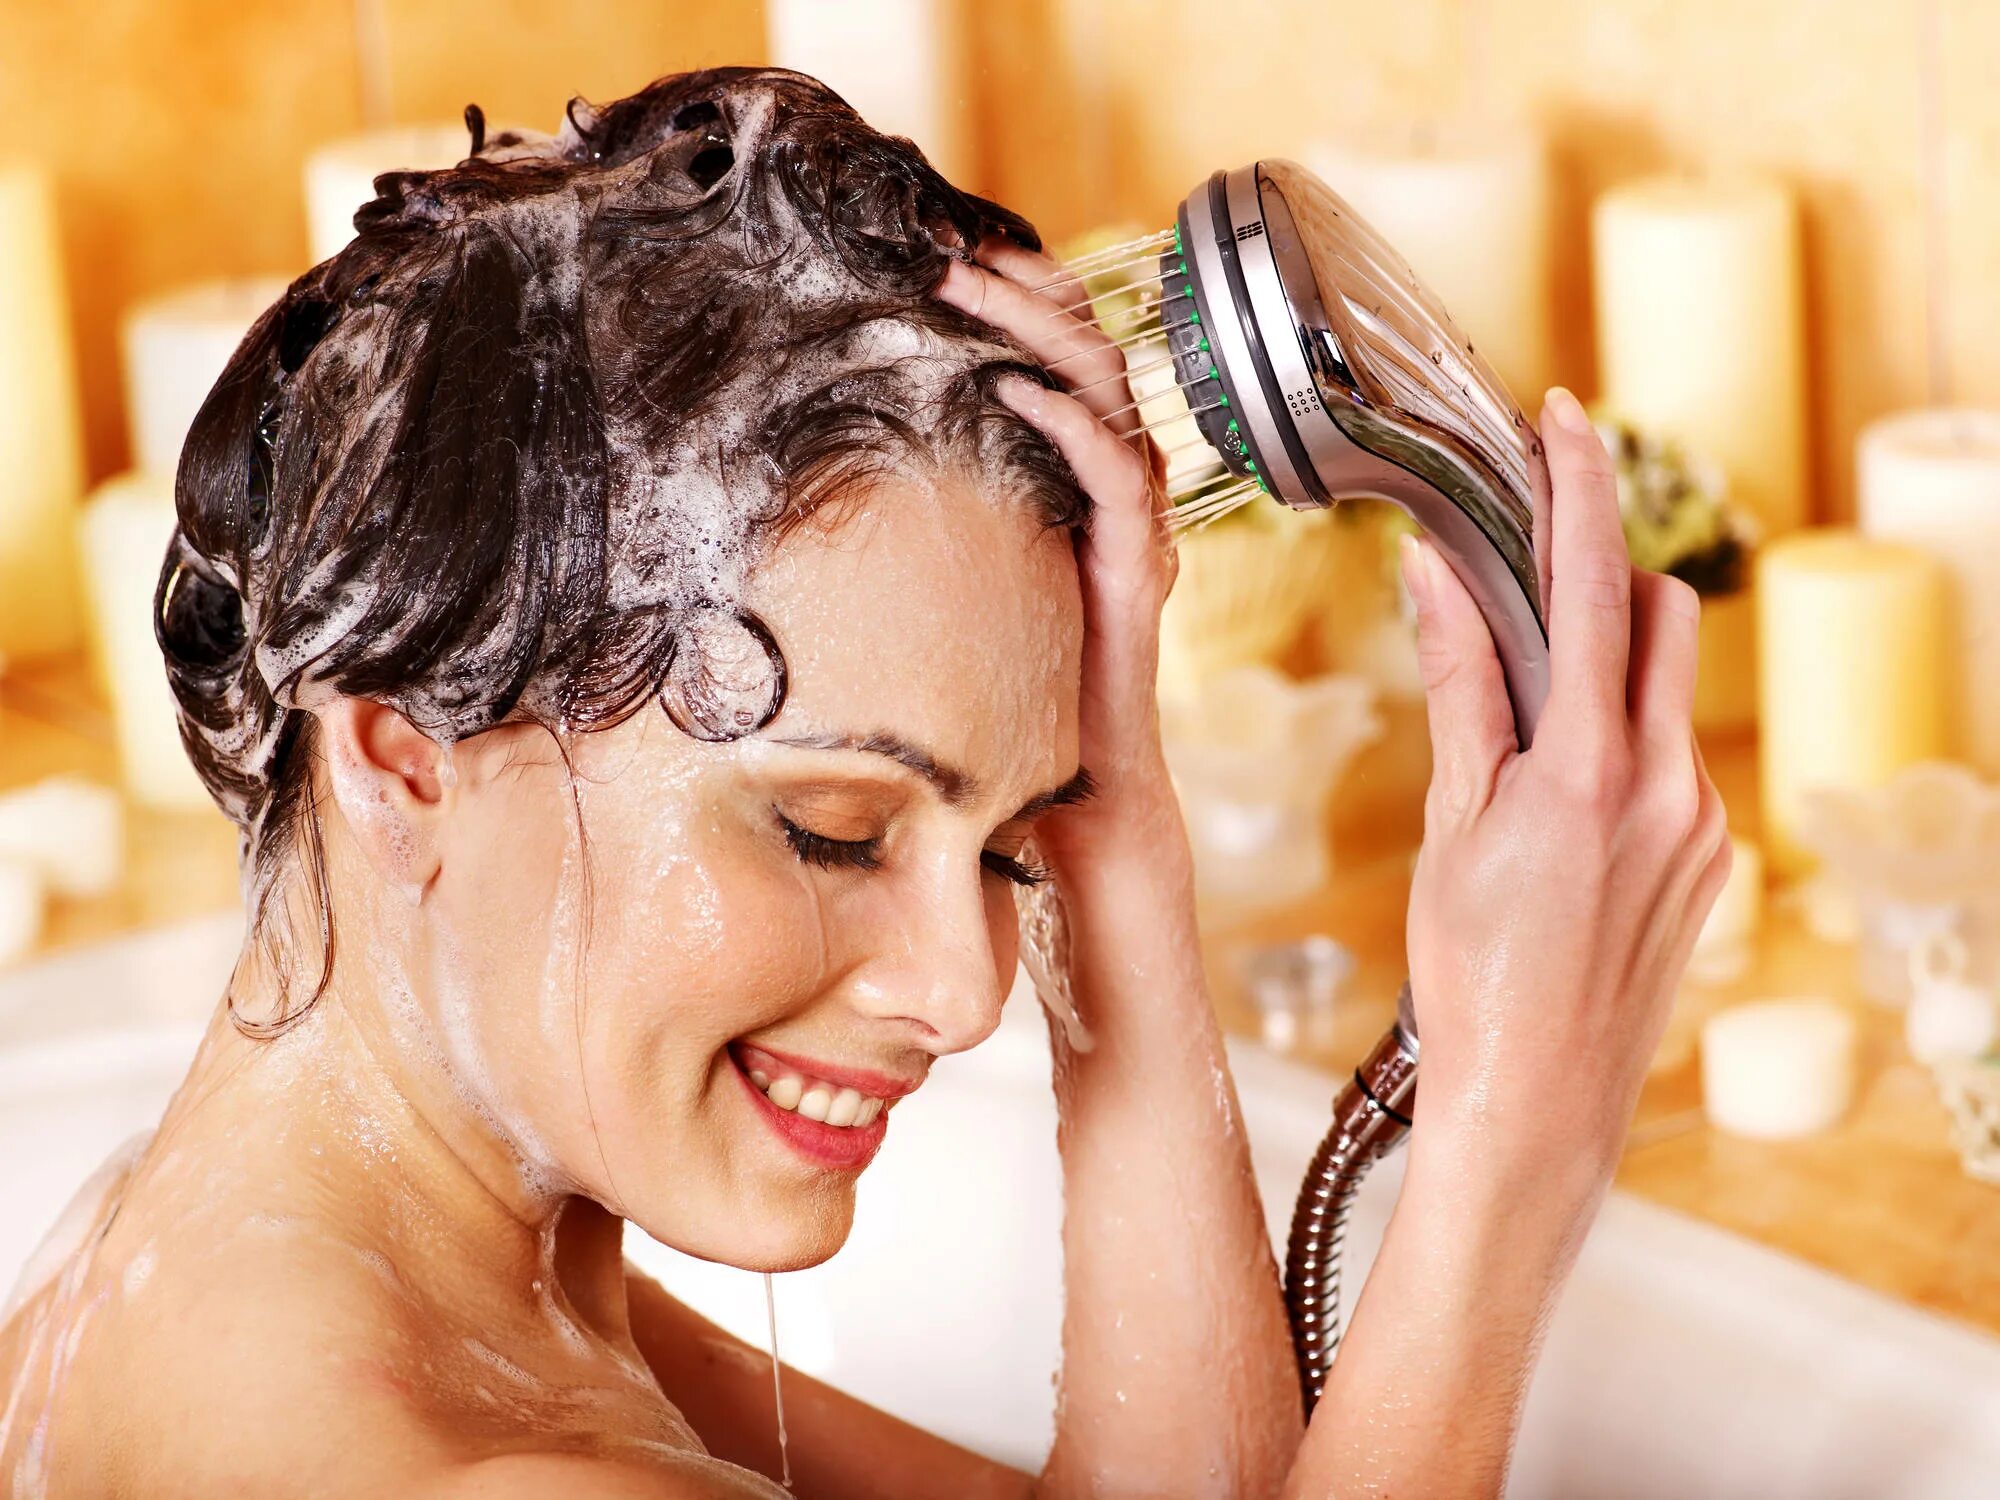 Мытье волос. Гигиена мытье волос. Мыть голову. Девушка моет голову. Мытье головы без воды